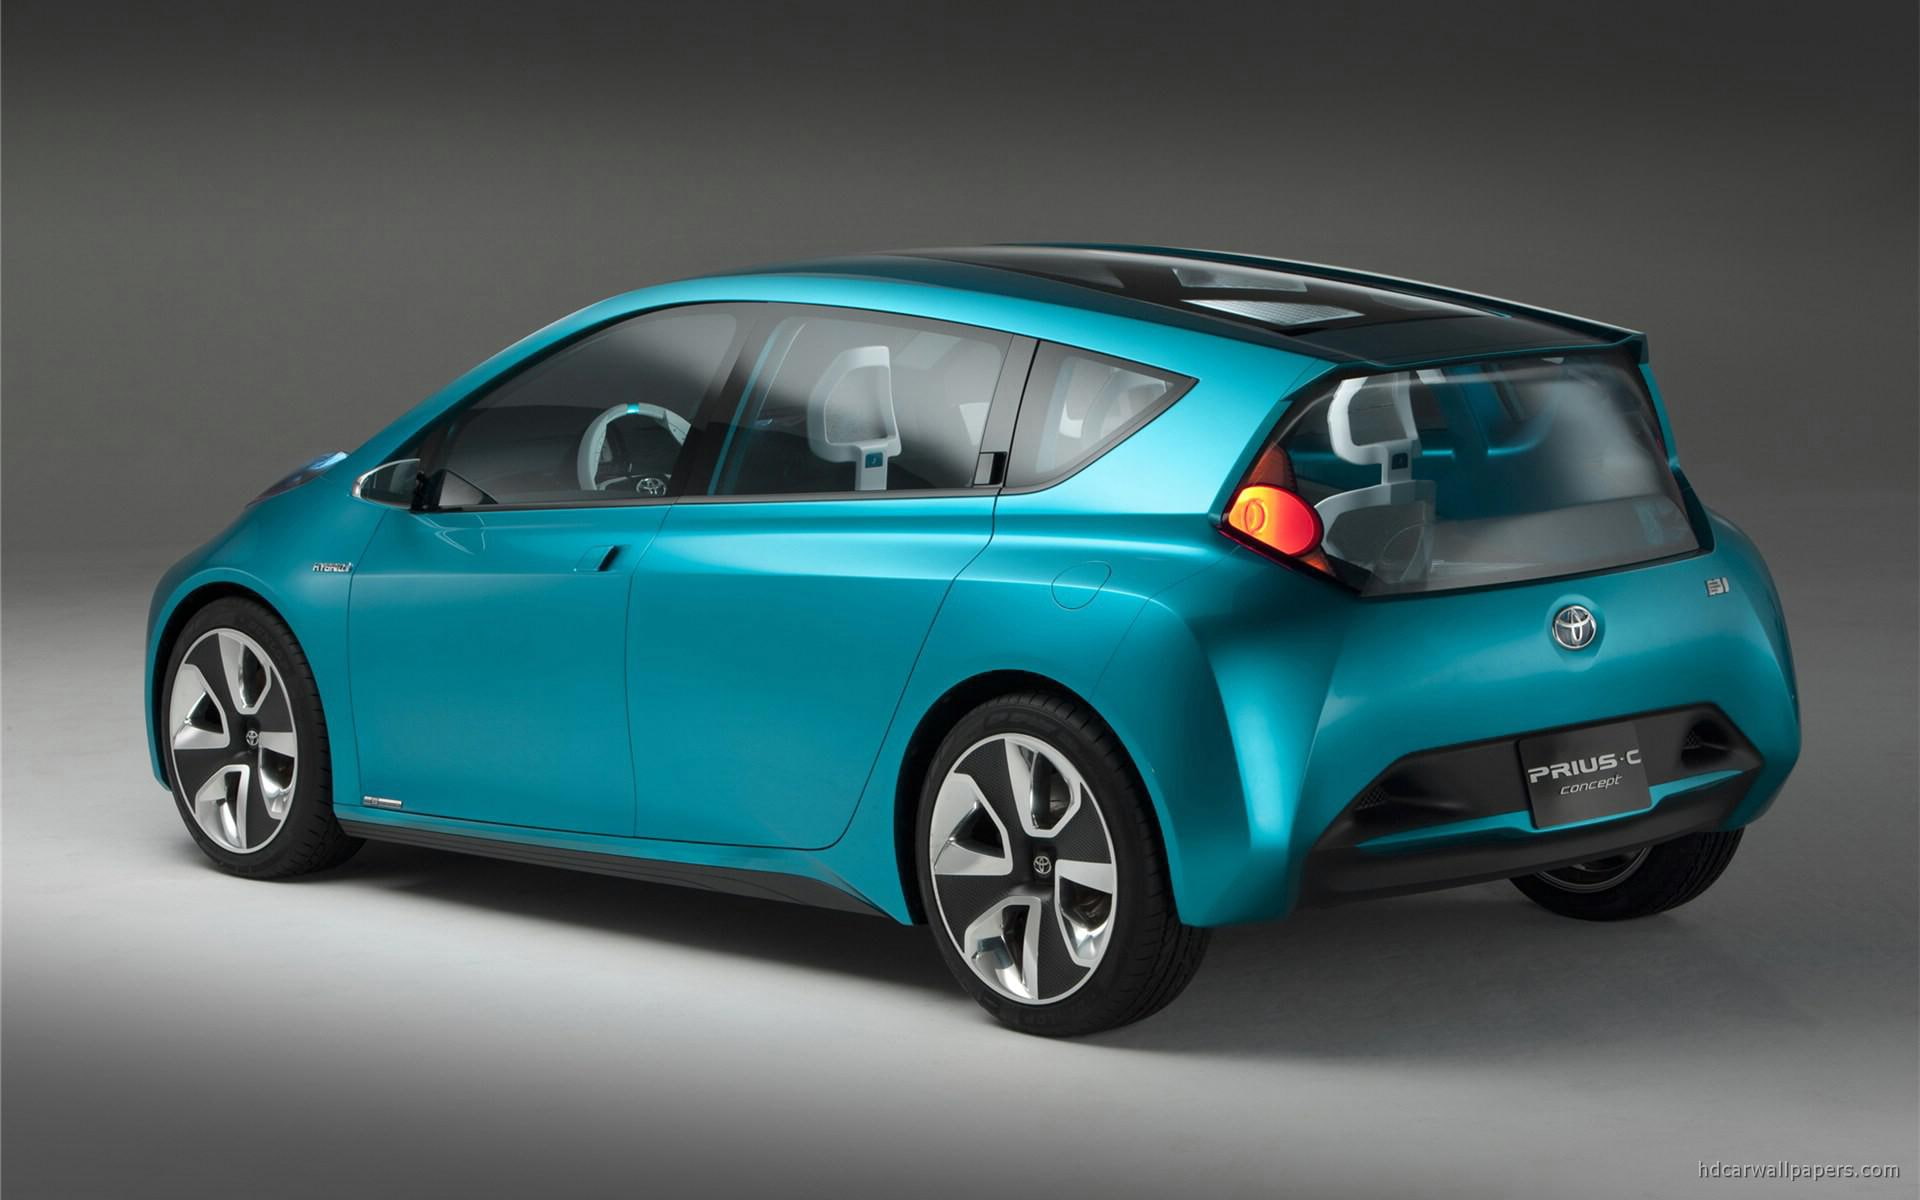 2011 Toyota Prius C Concept 2, turquoise toyota 5 doors hatchback